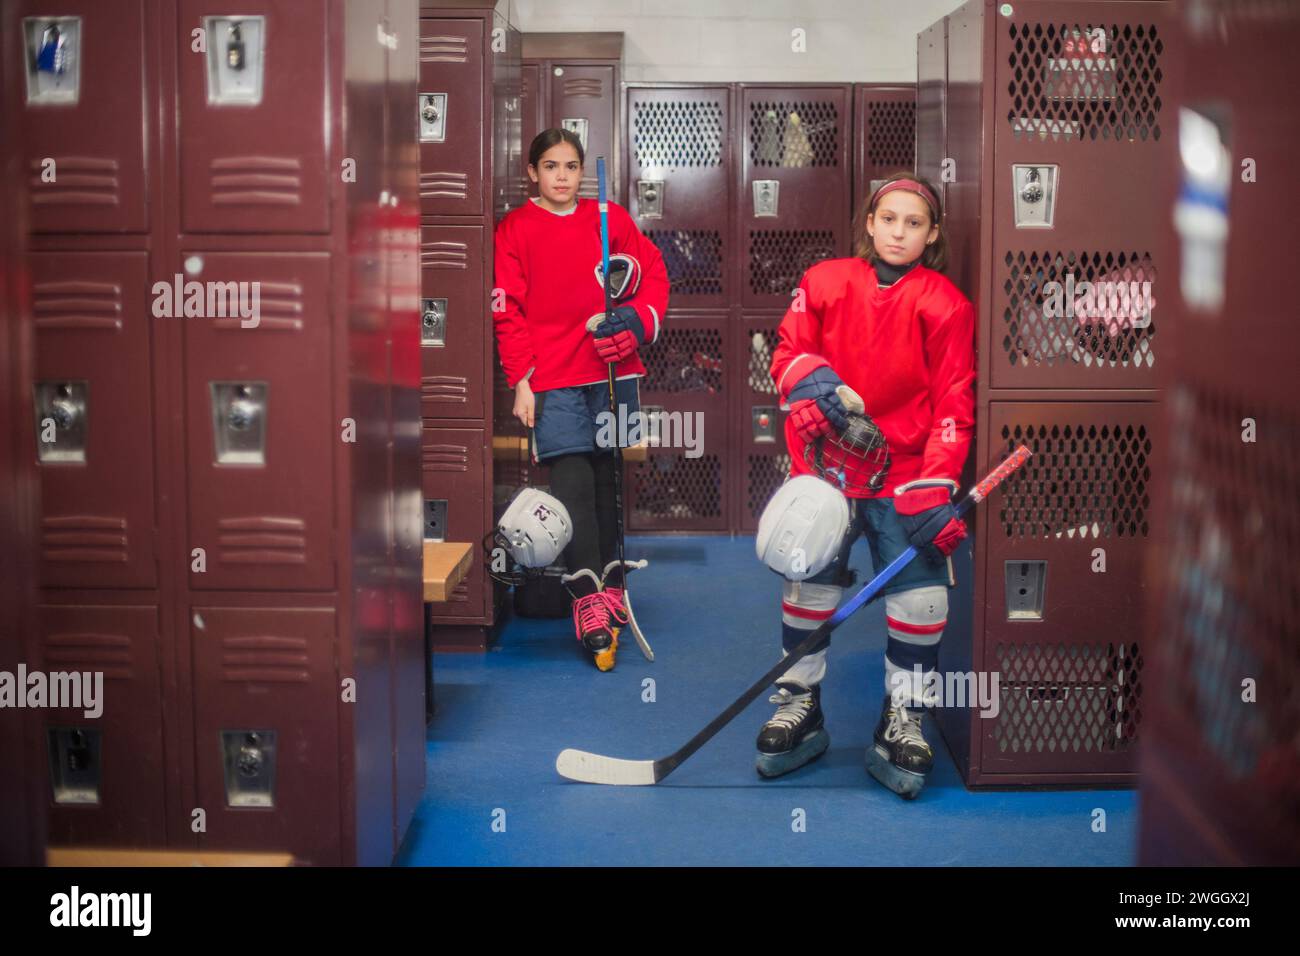 Des filles de hockey dans leurs vestiaires Banque D'Images